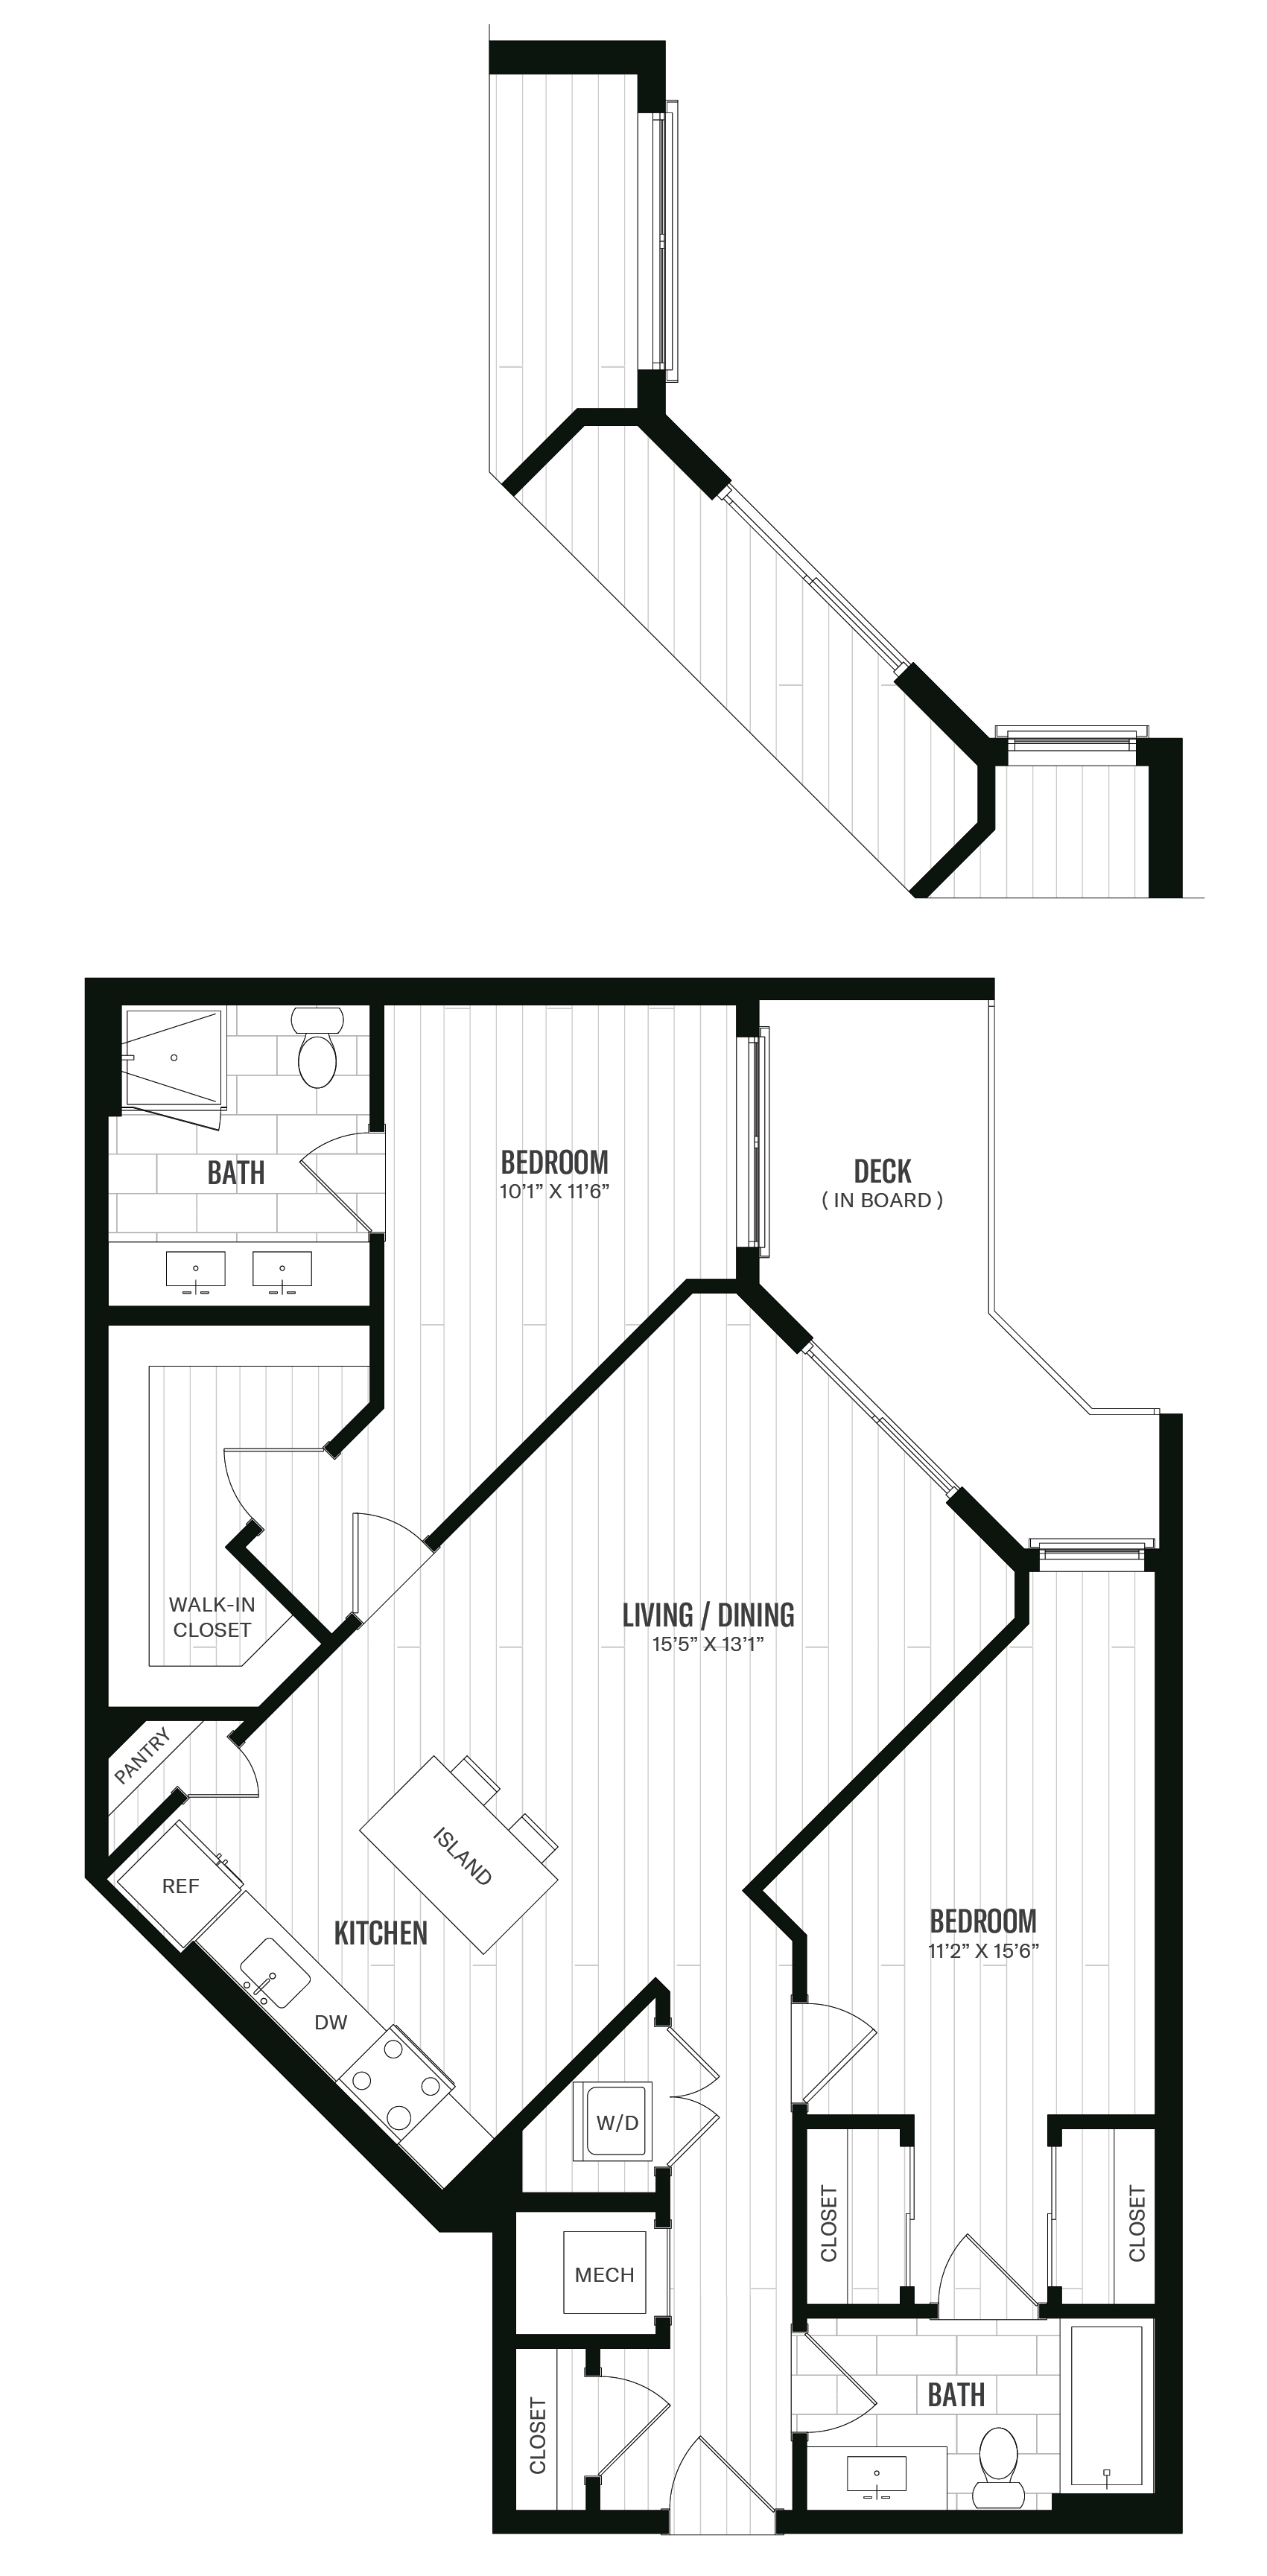 Floorplan image of unit 437